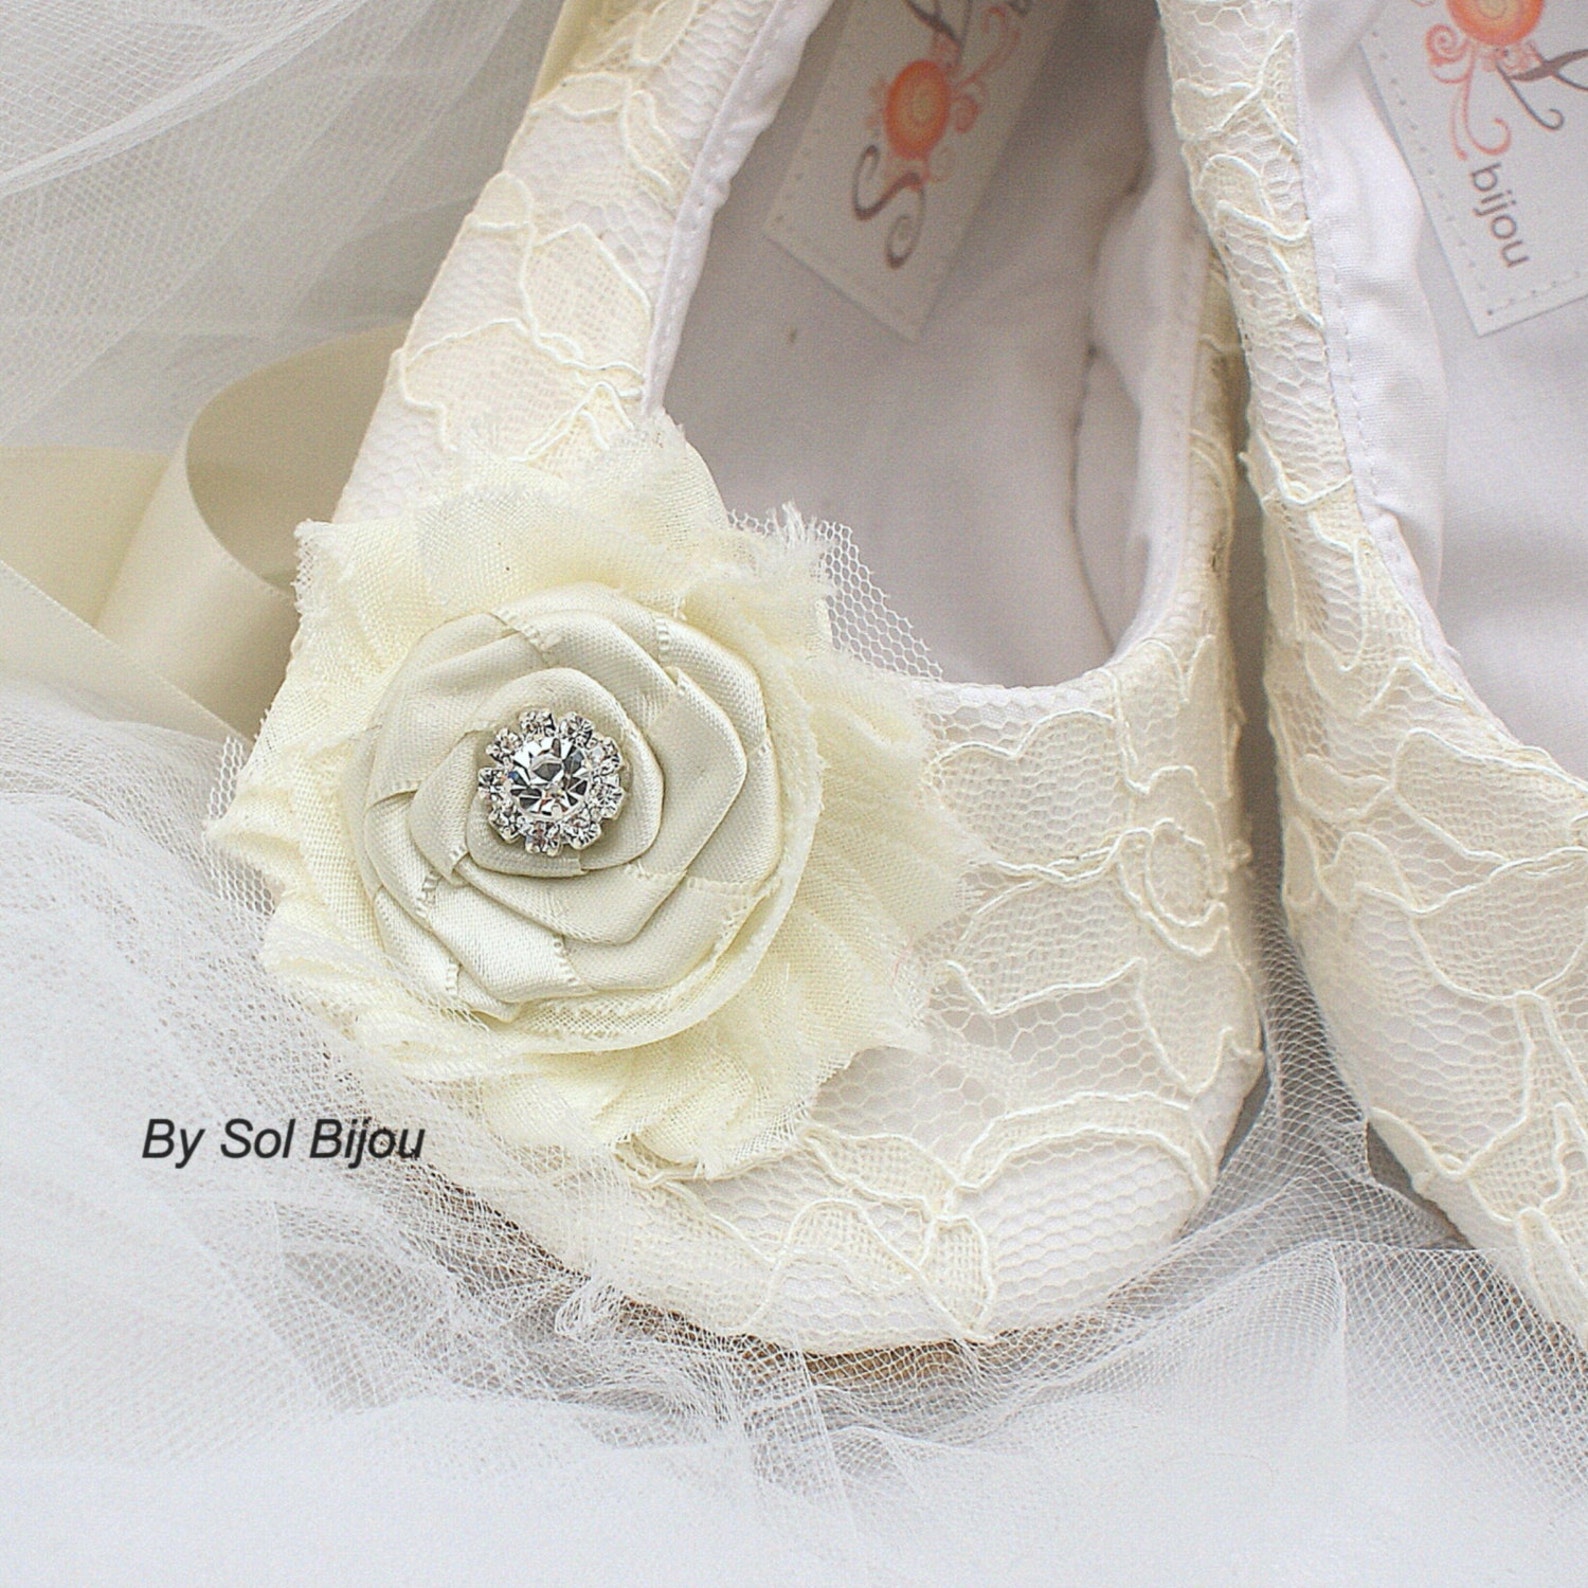 custom ballet flats shoes ivory ballet slippers wedding flats lace flats wedding shoes flower girl vintage style flats elegant w